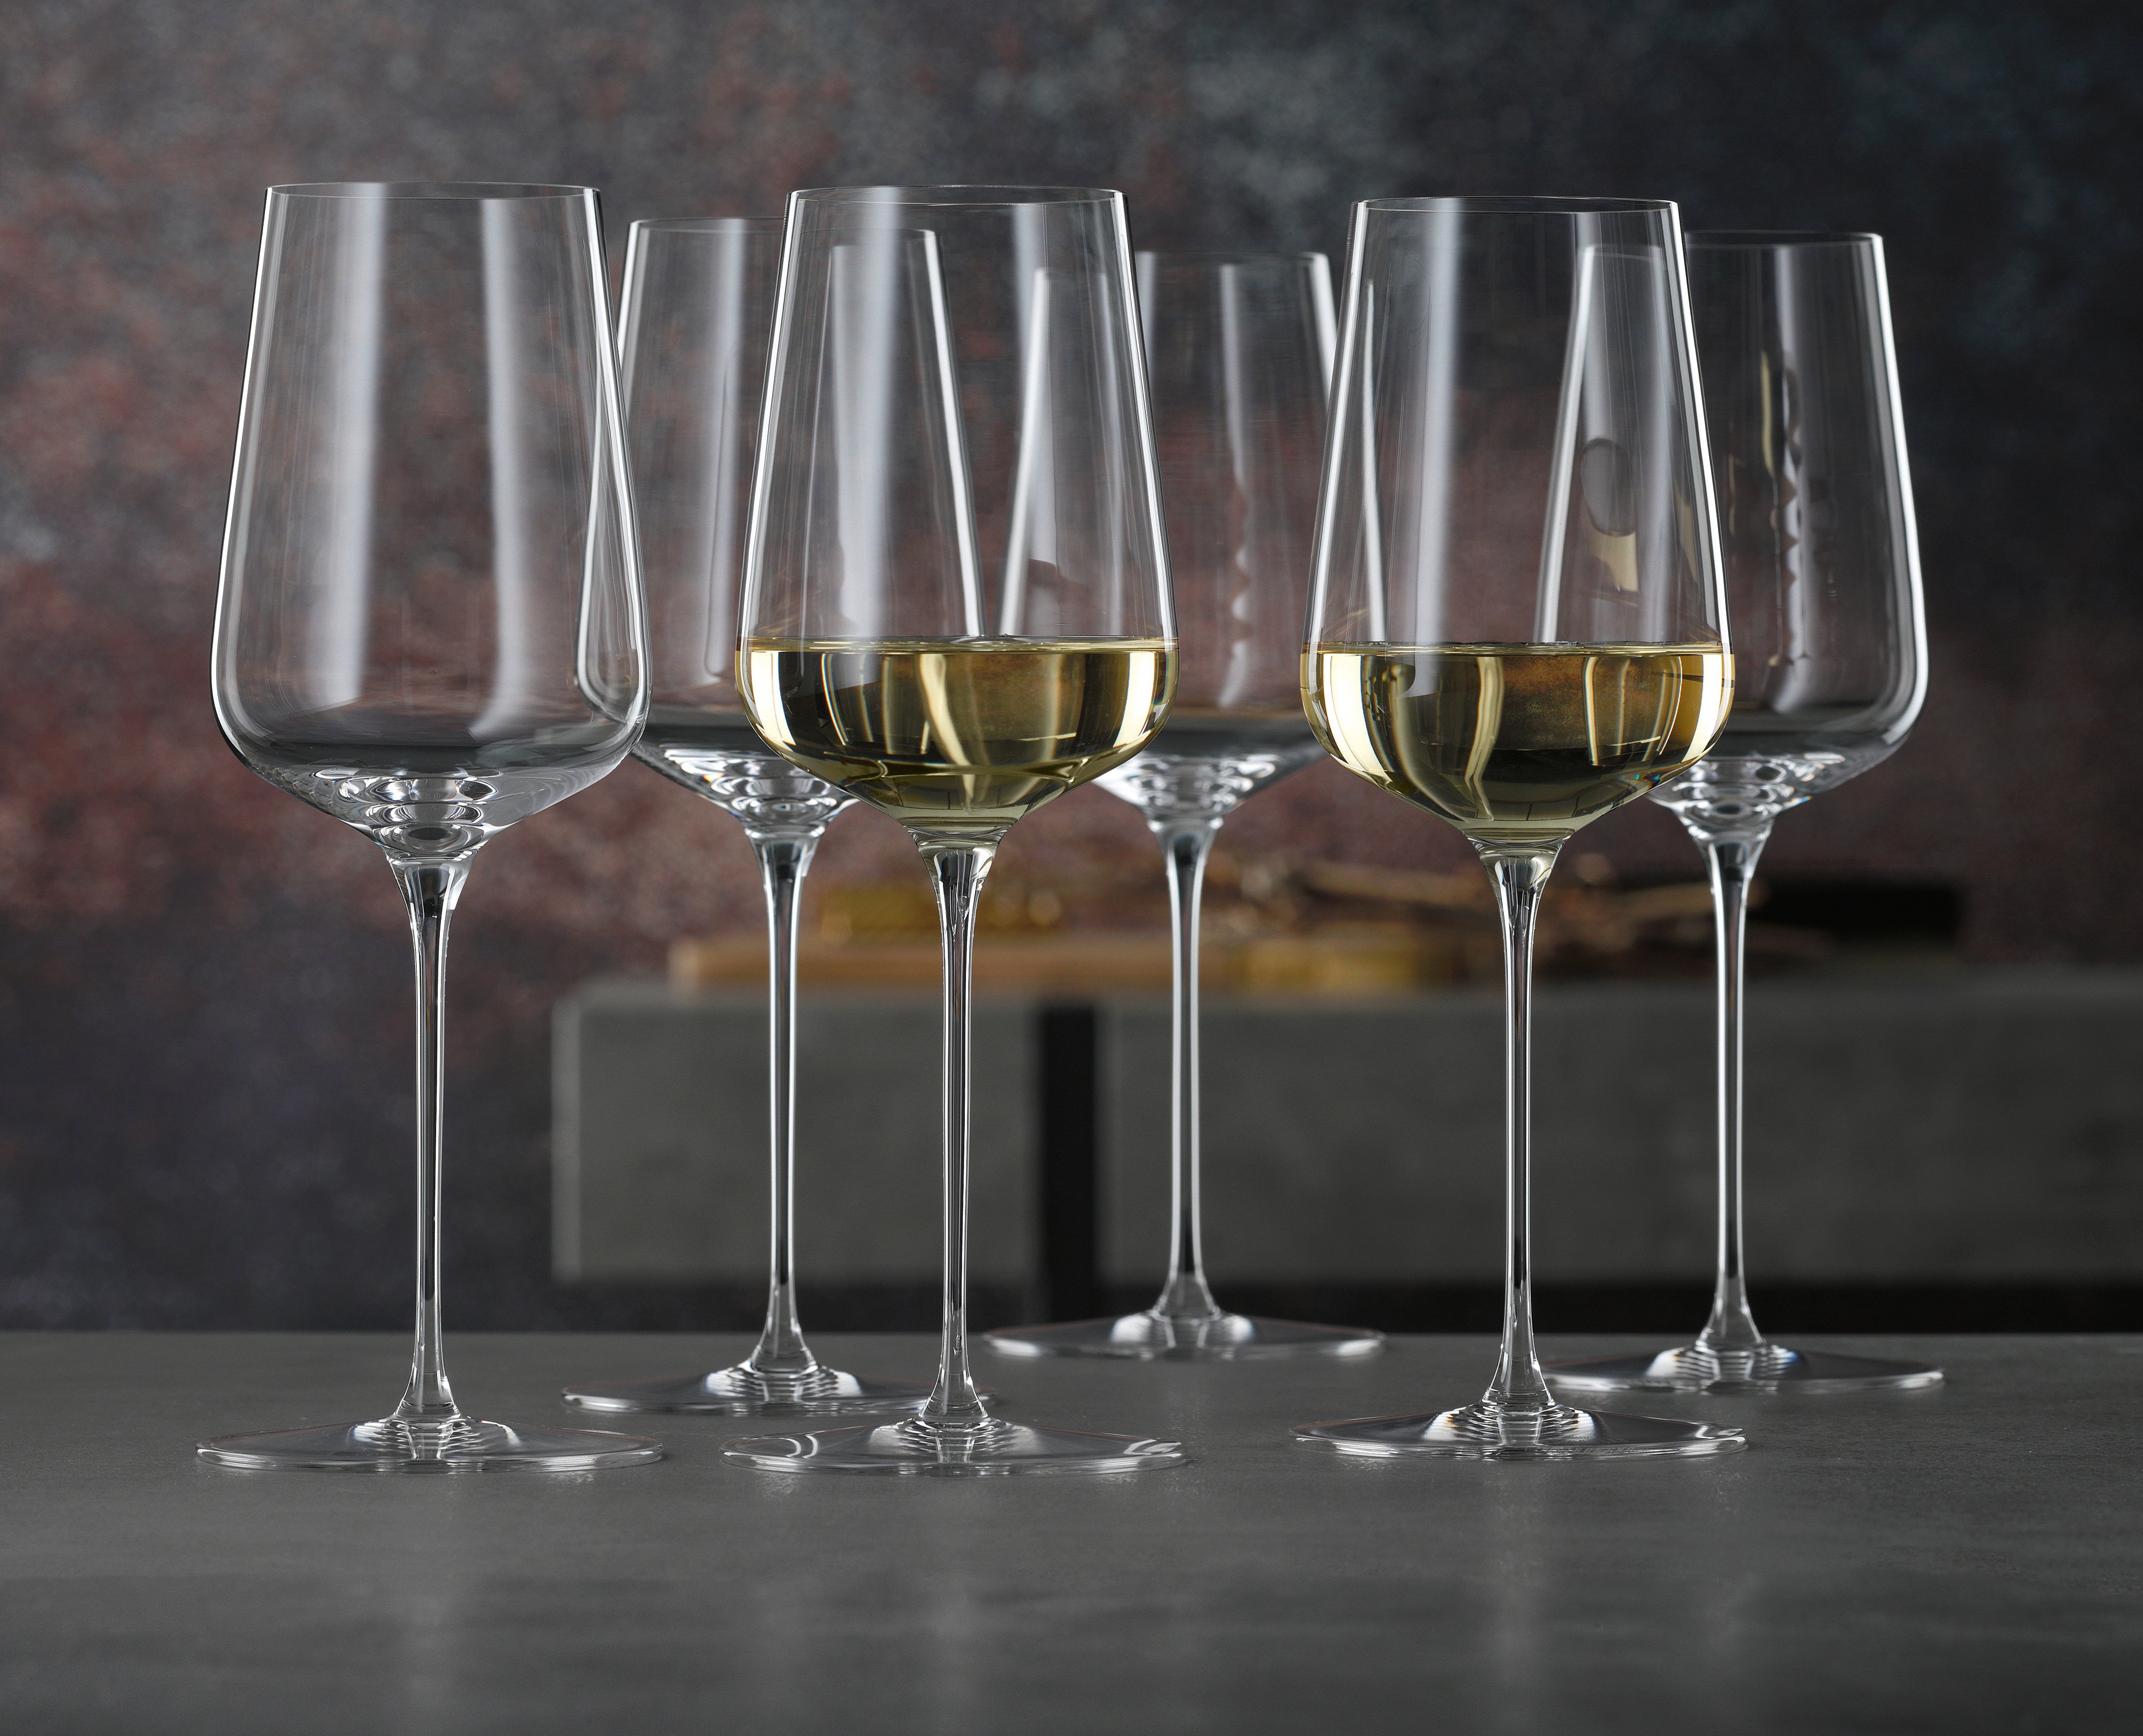 SPIEGELAU Definition White Wine Glass